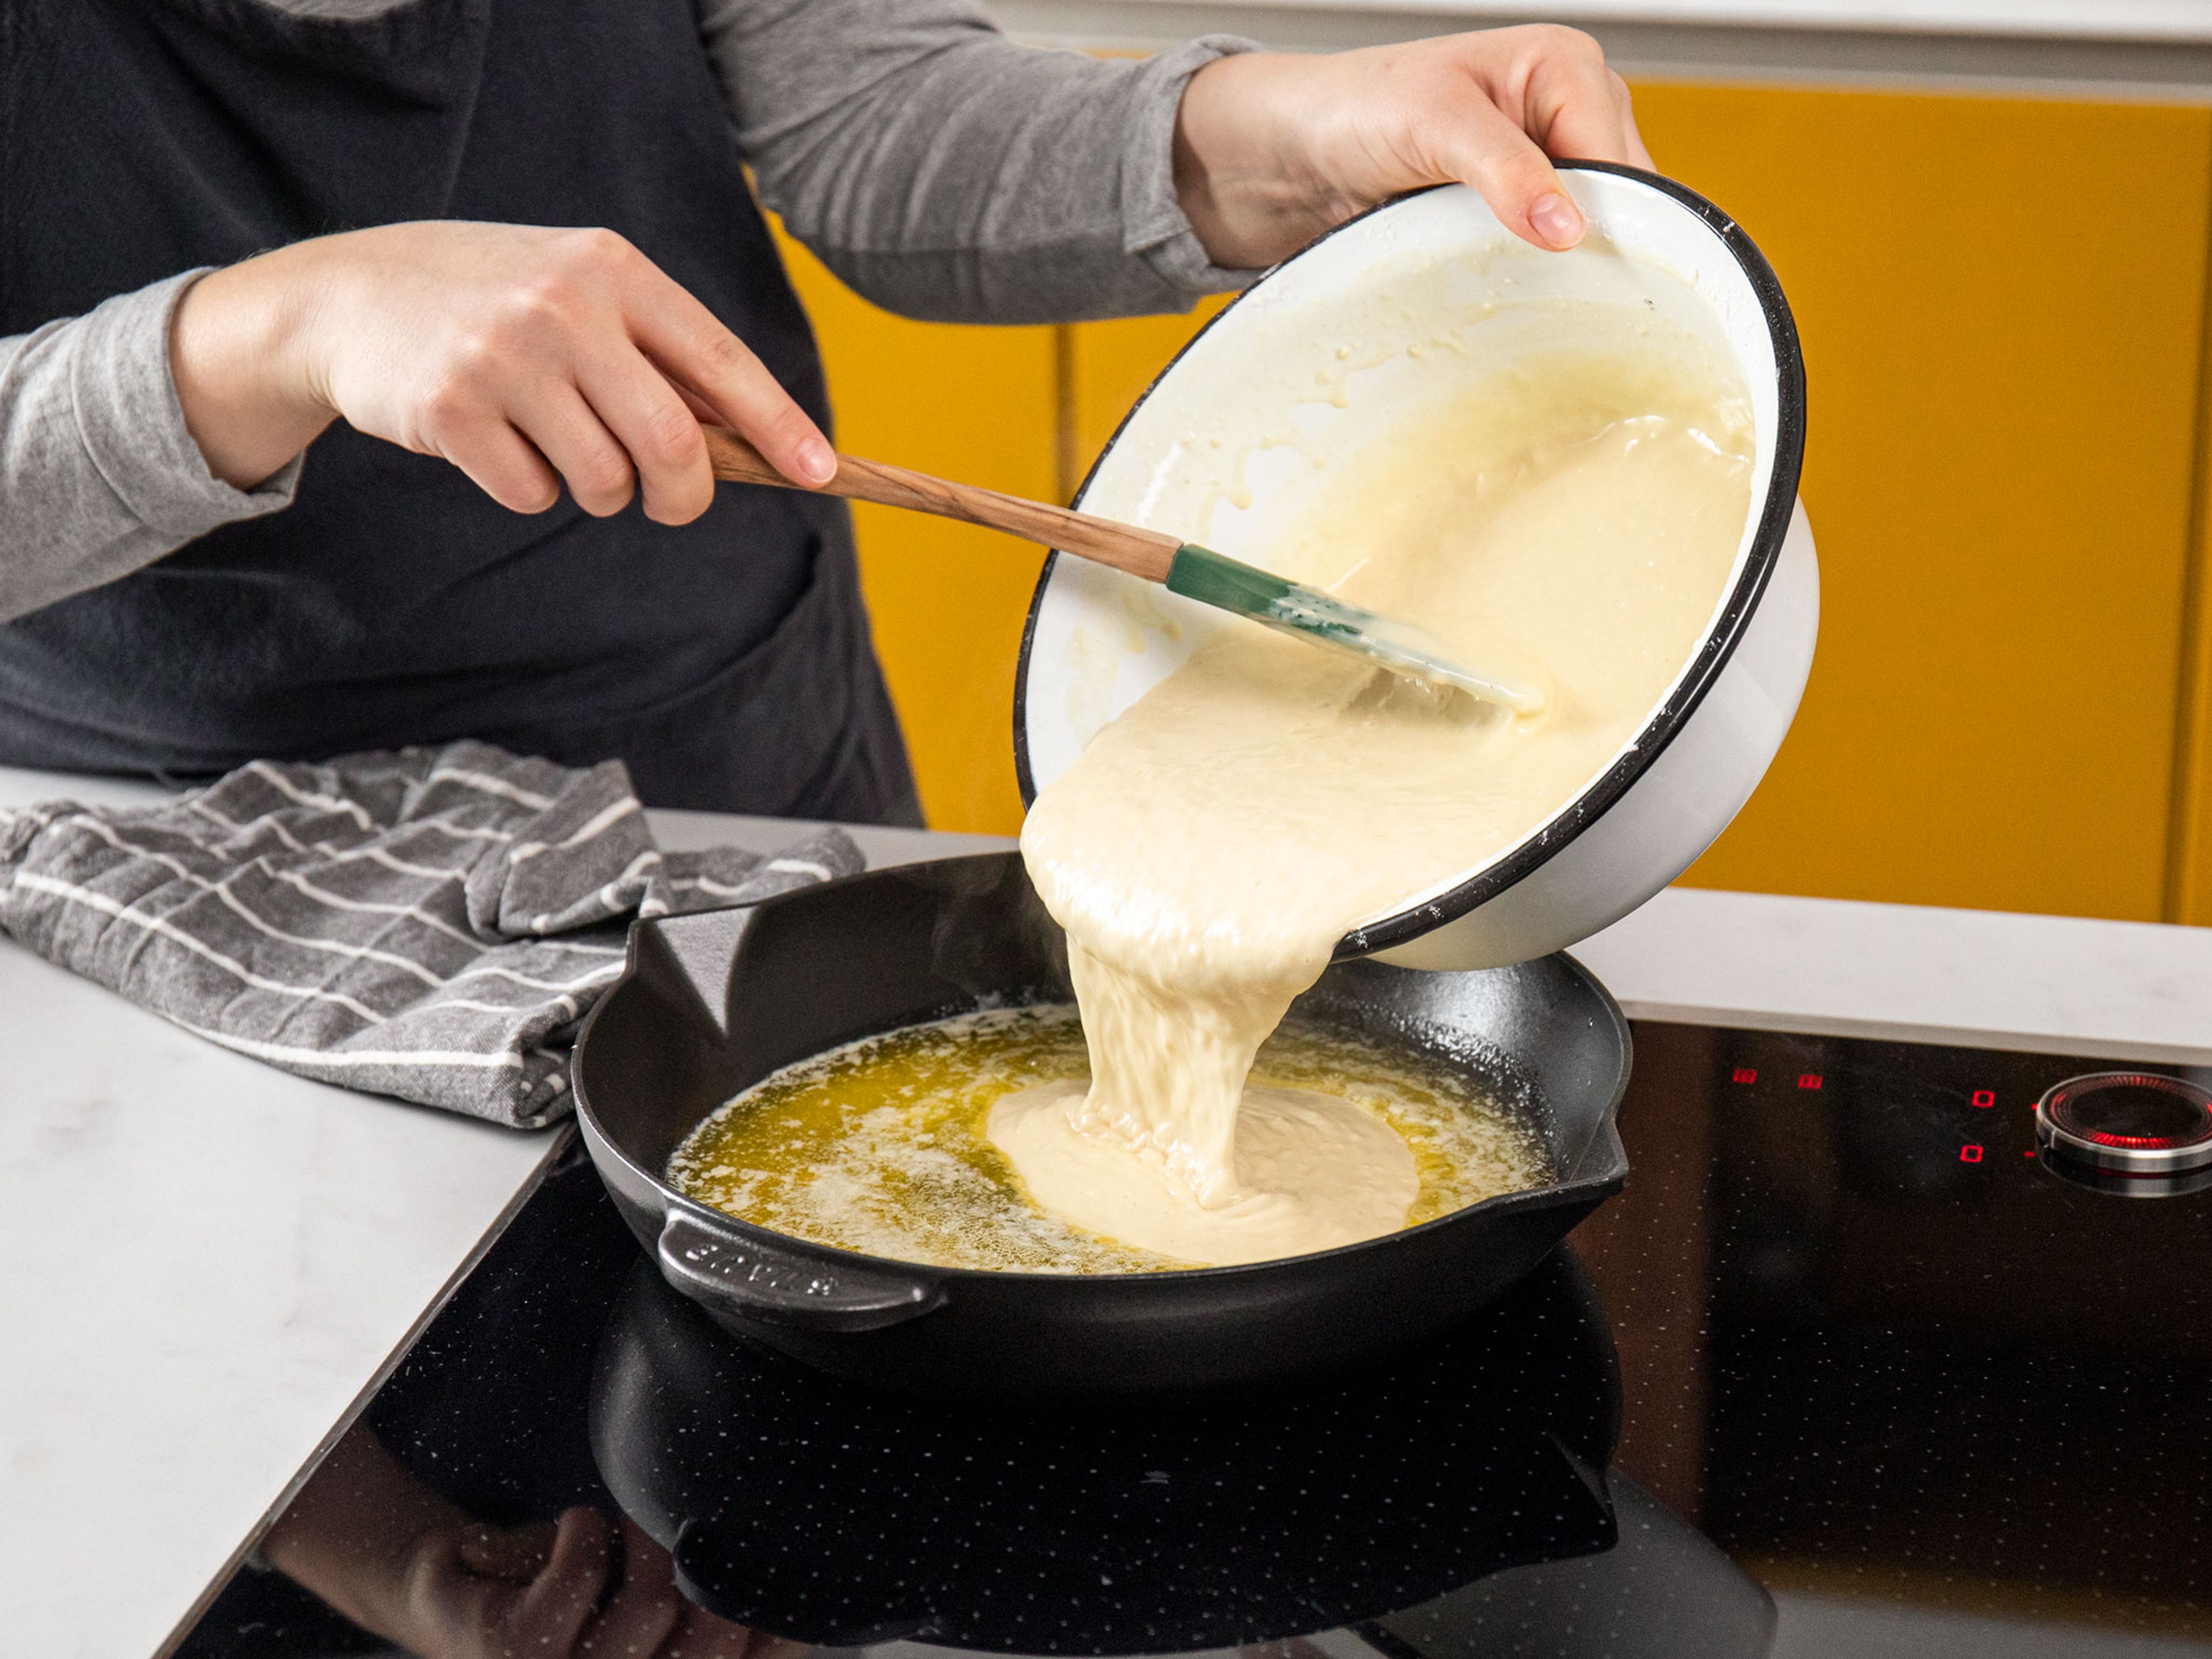 Butter in eine gusseiserne Pfanne geben und für ca. 5 Min. im vorgeheizten Backofen schmelzen. Die heiße Pfanne vorsichtig aus dem Backofen nehmen und den Teig vorsichtig hineingeben. Die Pfanne zurück in den Backofen stellen und den Teig für ca. 20 Min. backen, bis der Pancake goldbraun und fluffig aussieht. Der Teig sollte zu dem Zeitpunkt gleichmäßig an den Rändern hochgekommen sein.